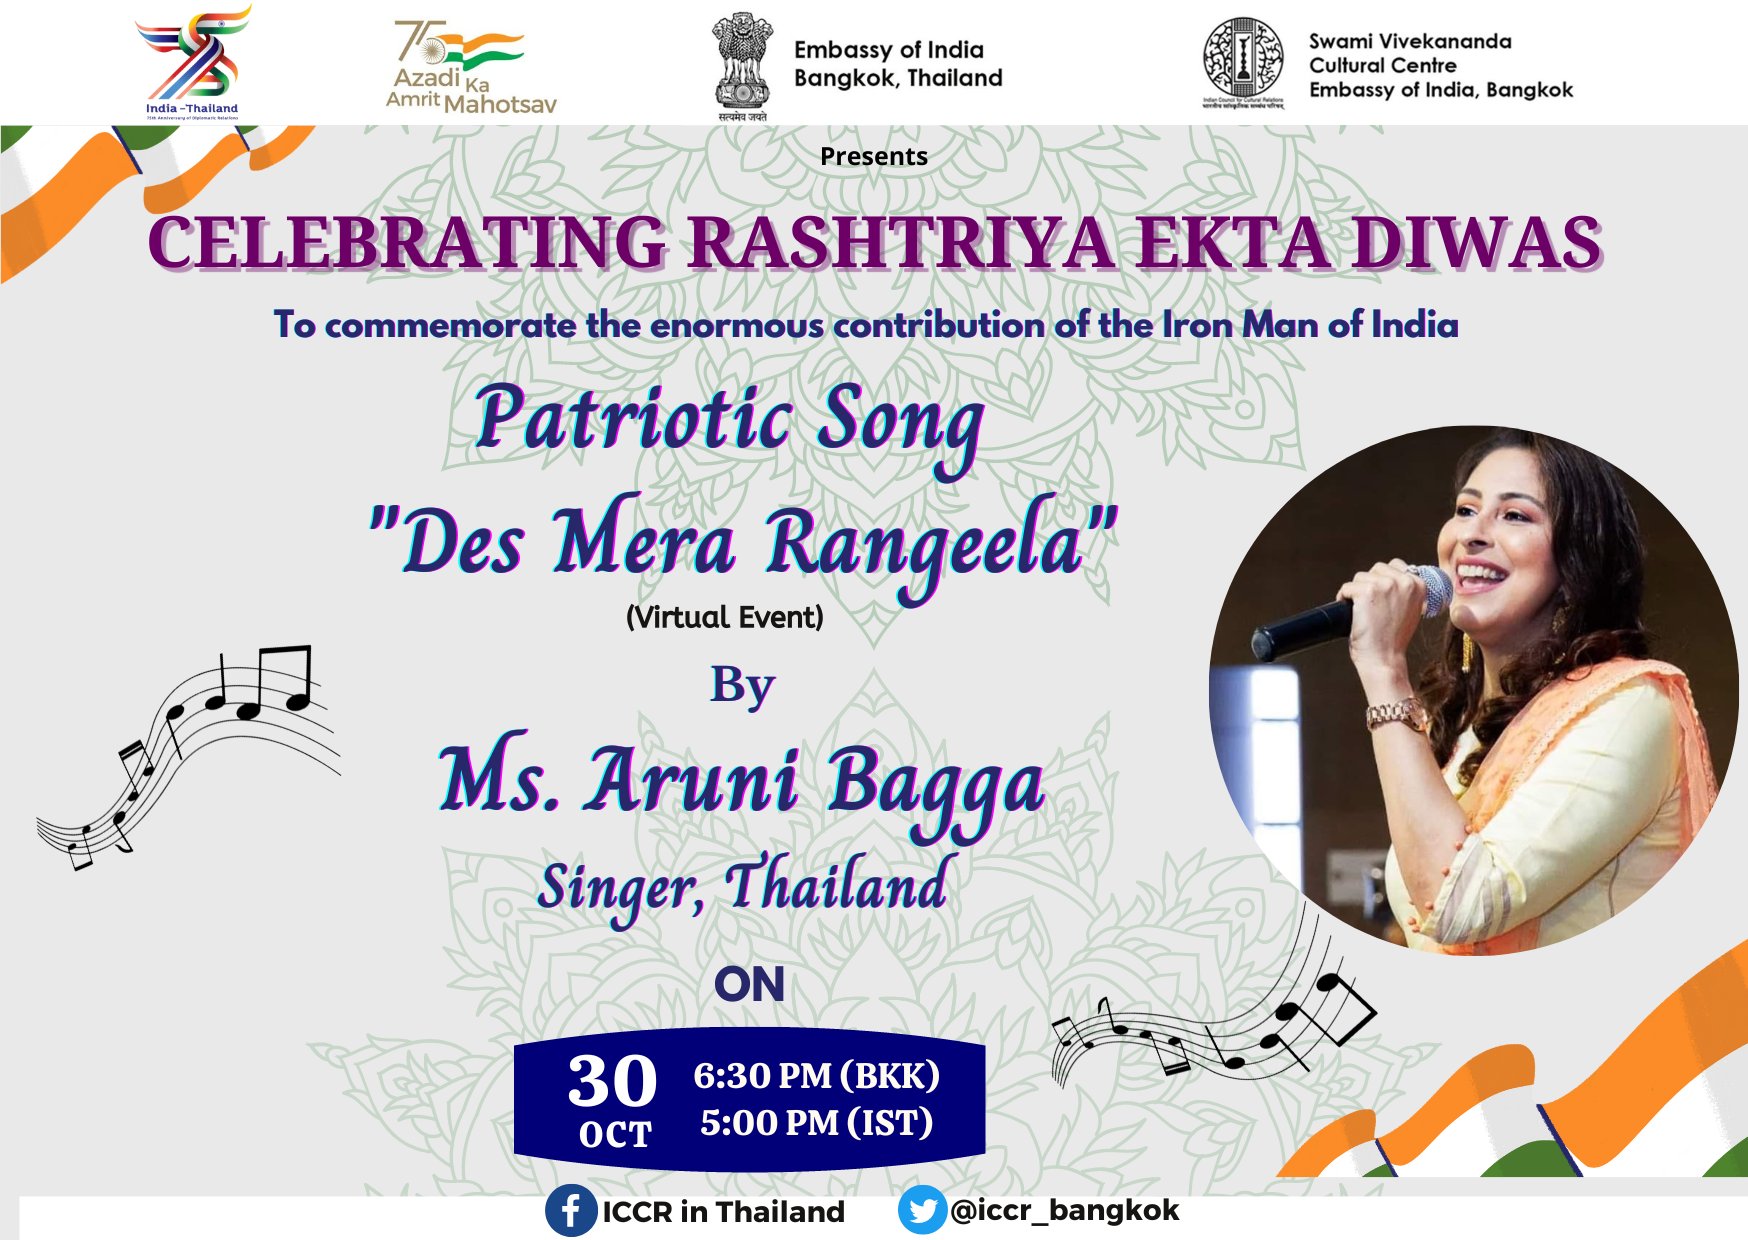 SVCC's event - Celebration of Rashtriya Ekta Week-Days 6